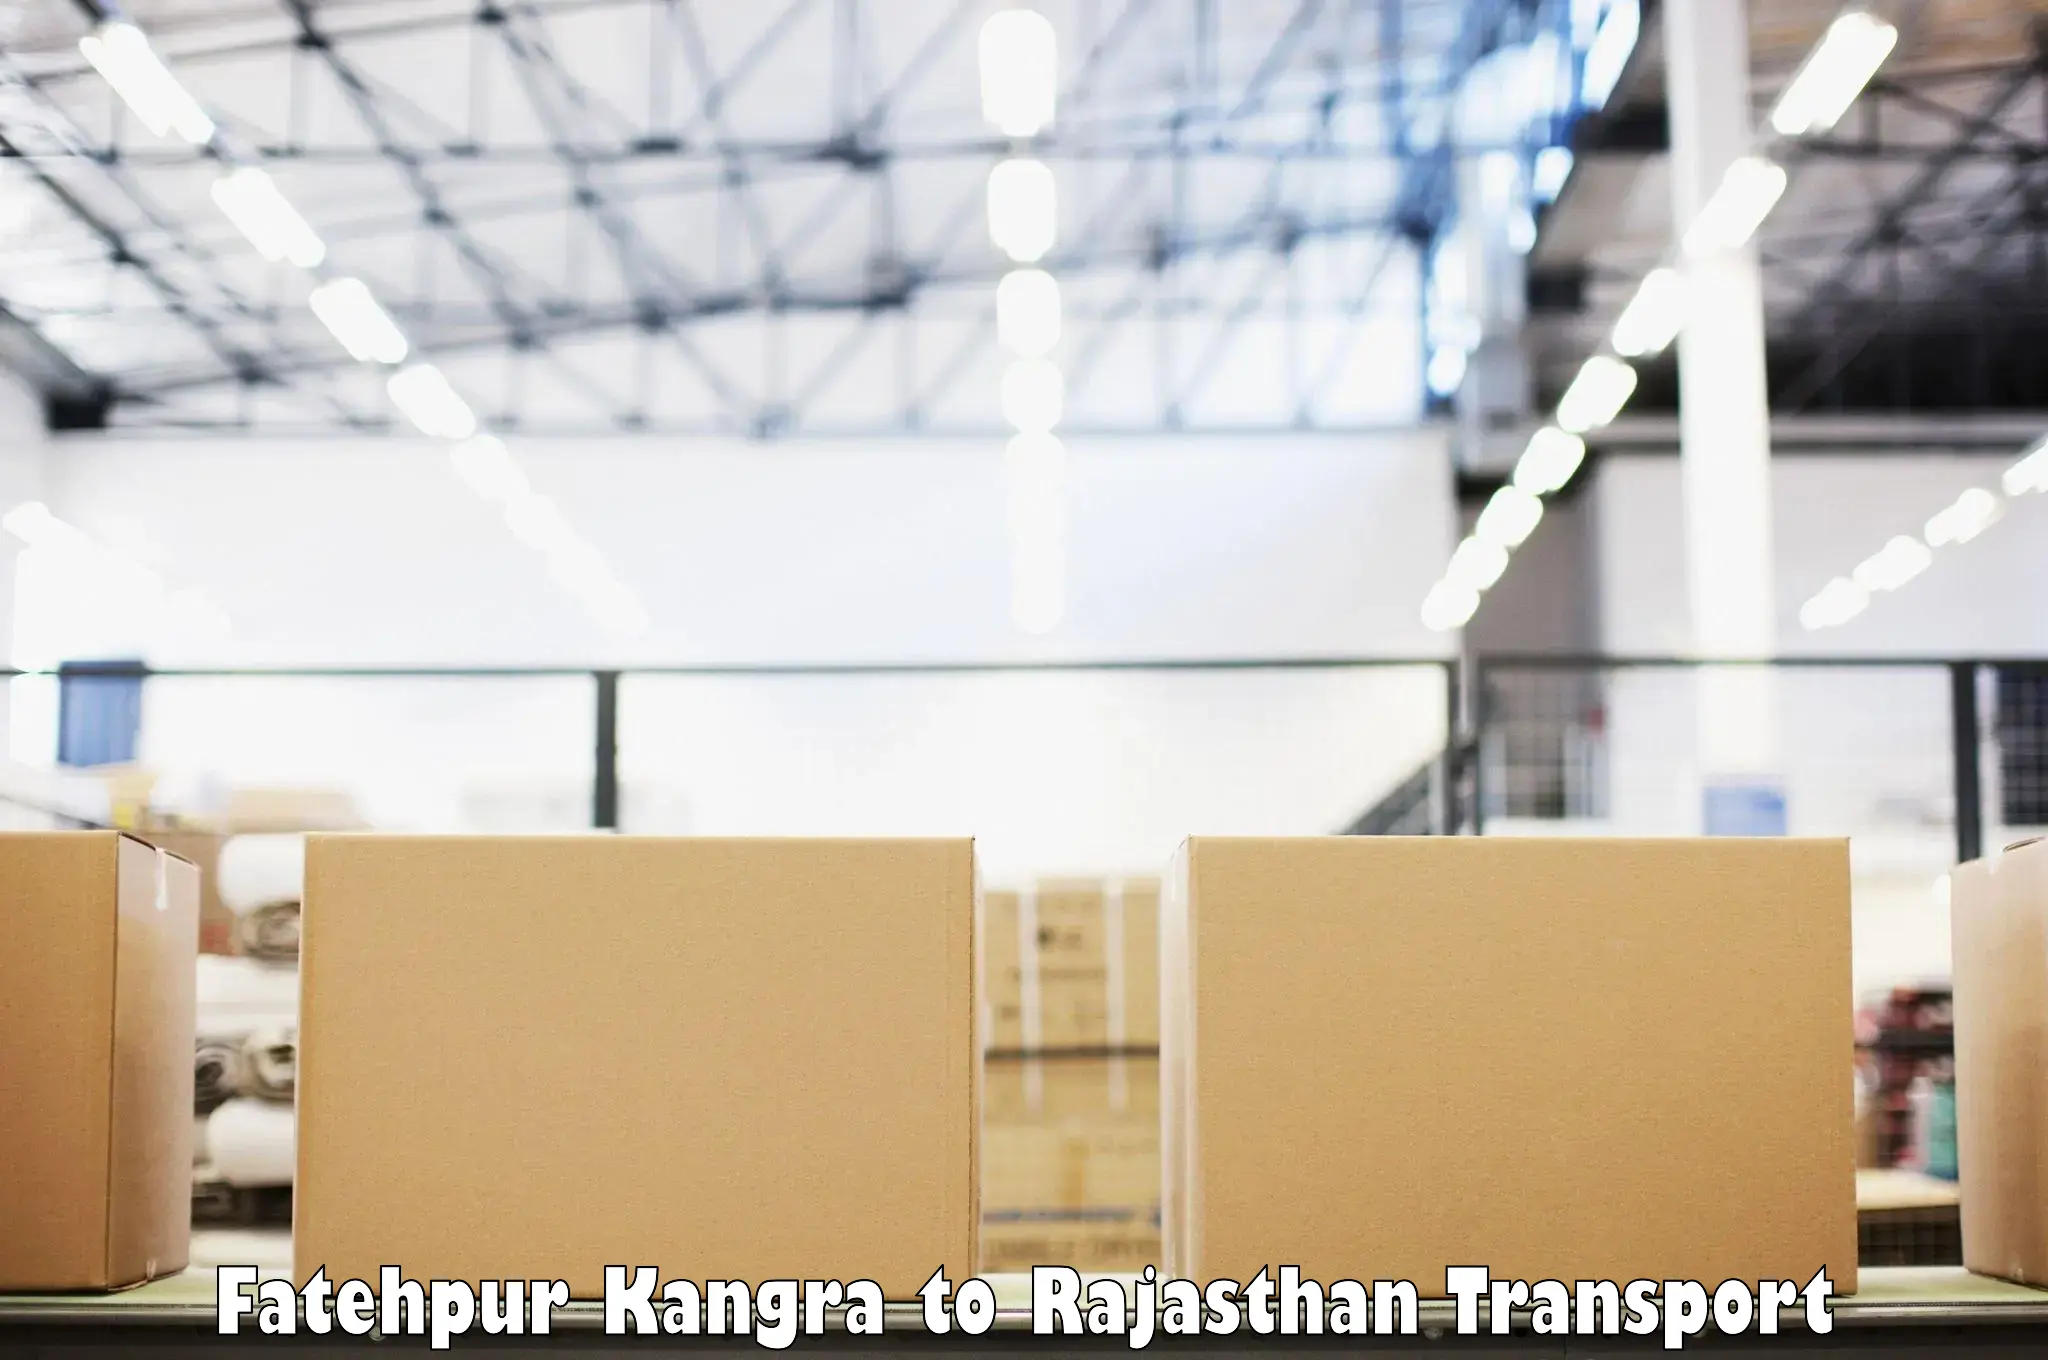 Land transport services Fatehpur Kangra to Rajasthan